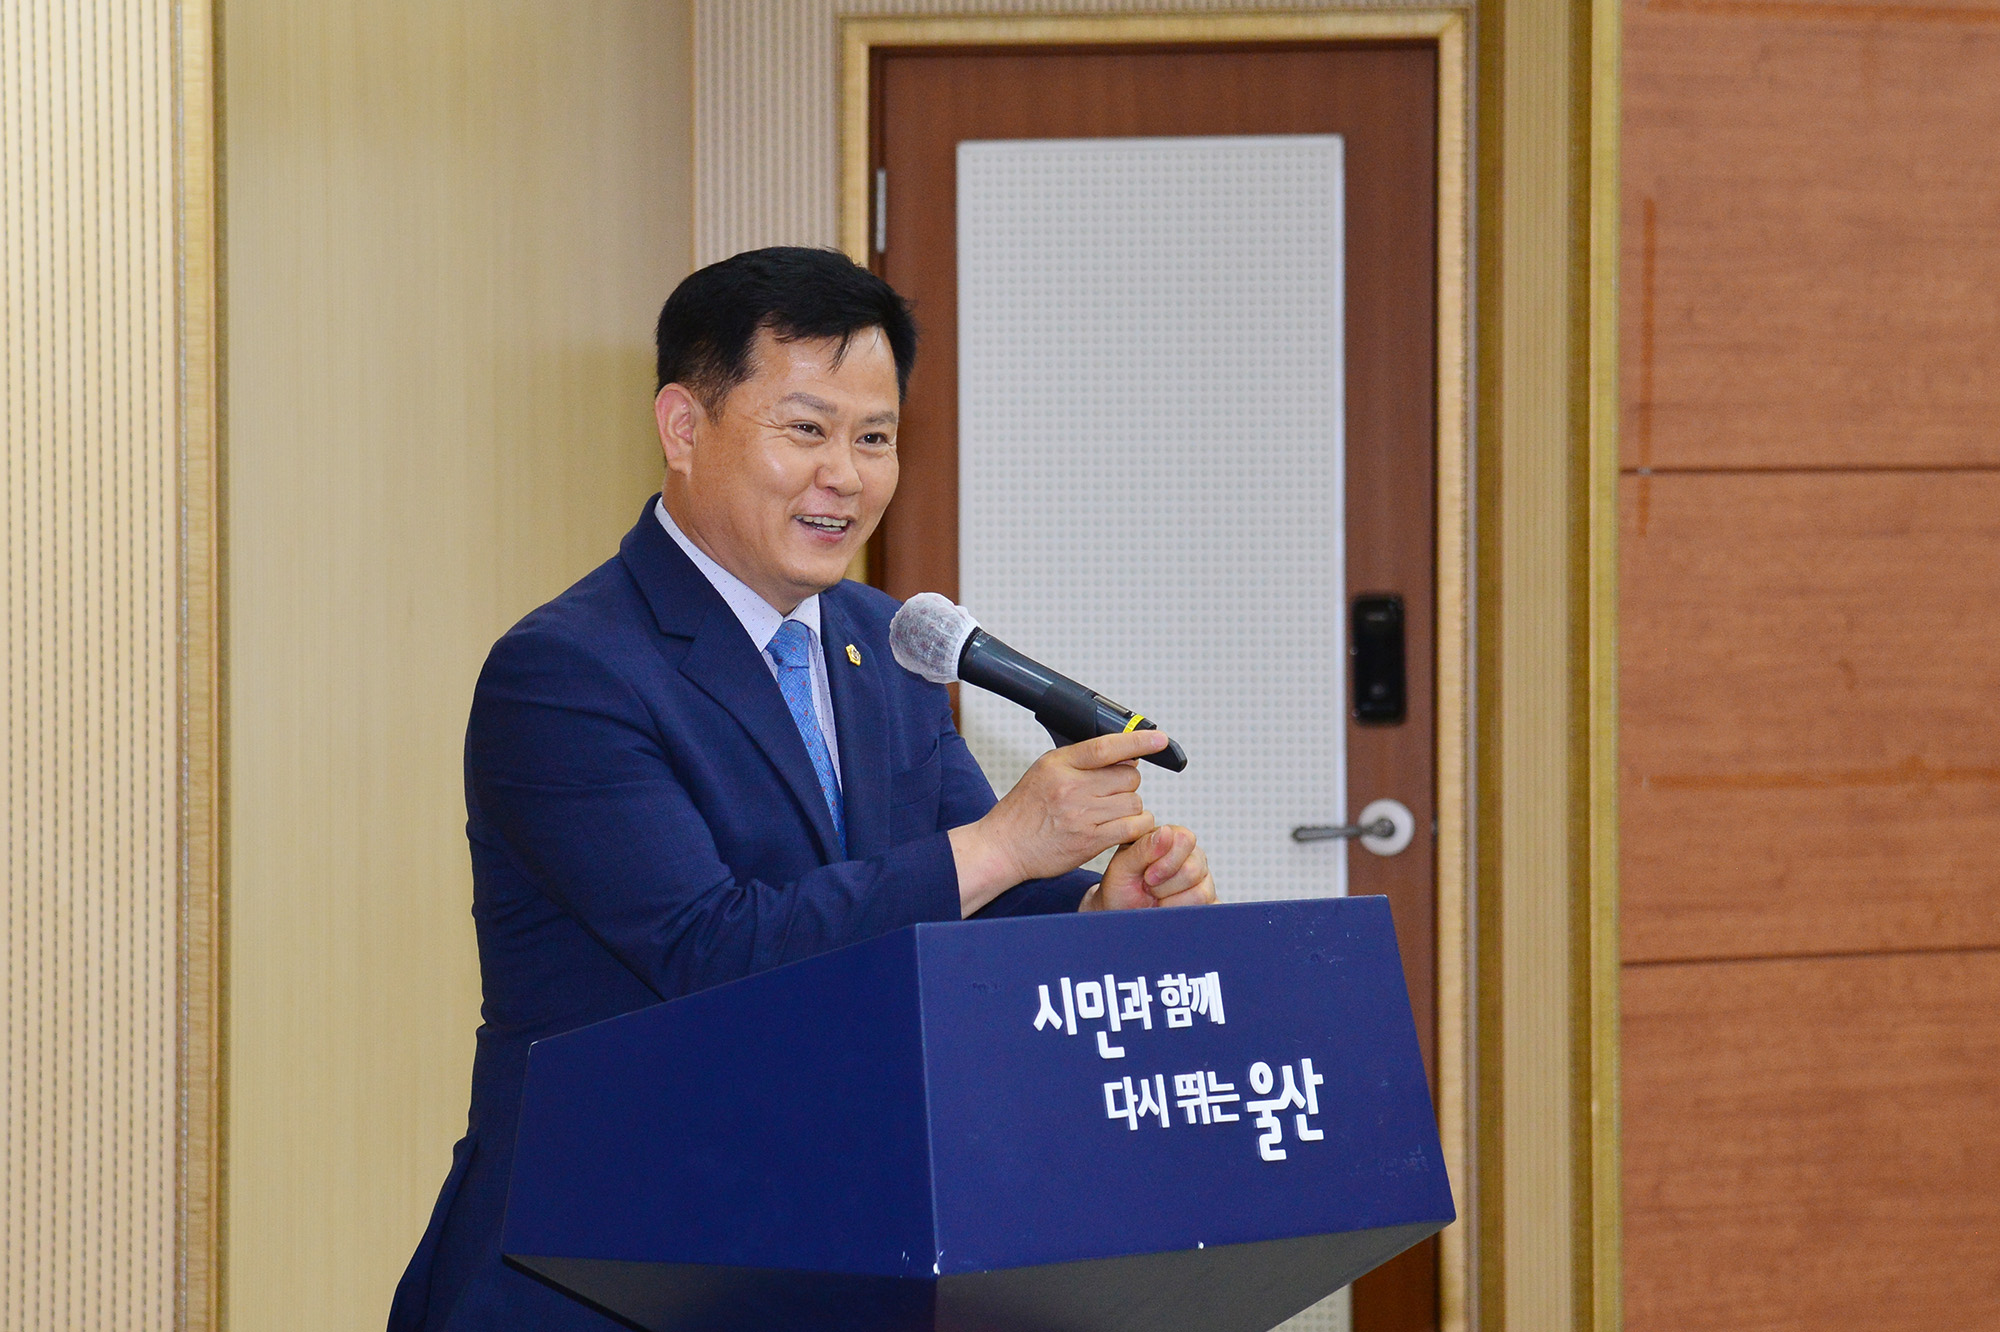 박병석 의장, ‘21세기 울산의 가치’ 세미나 개최2